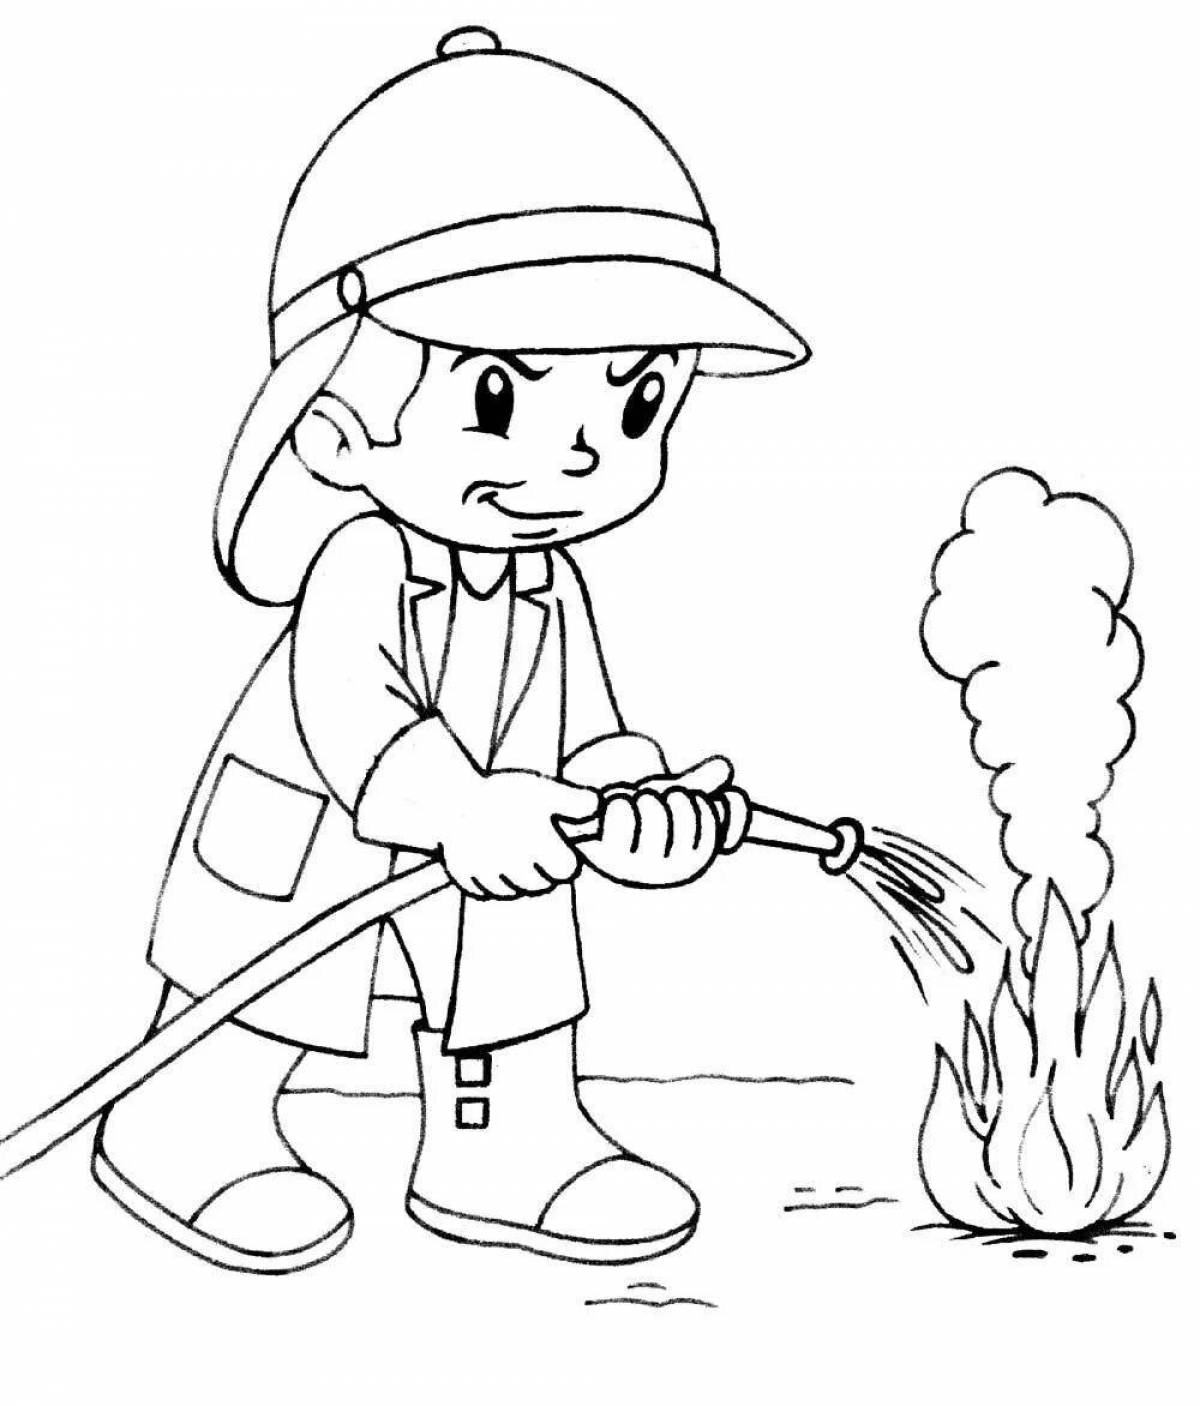 Раскраска на пожарную тему для детей